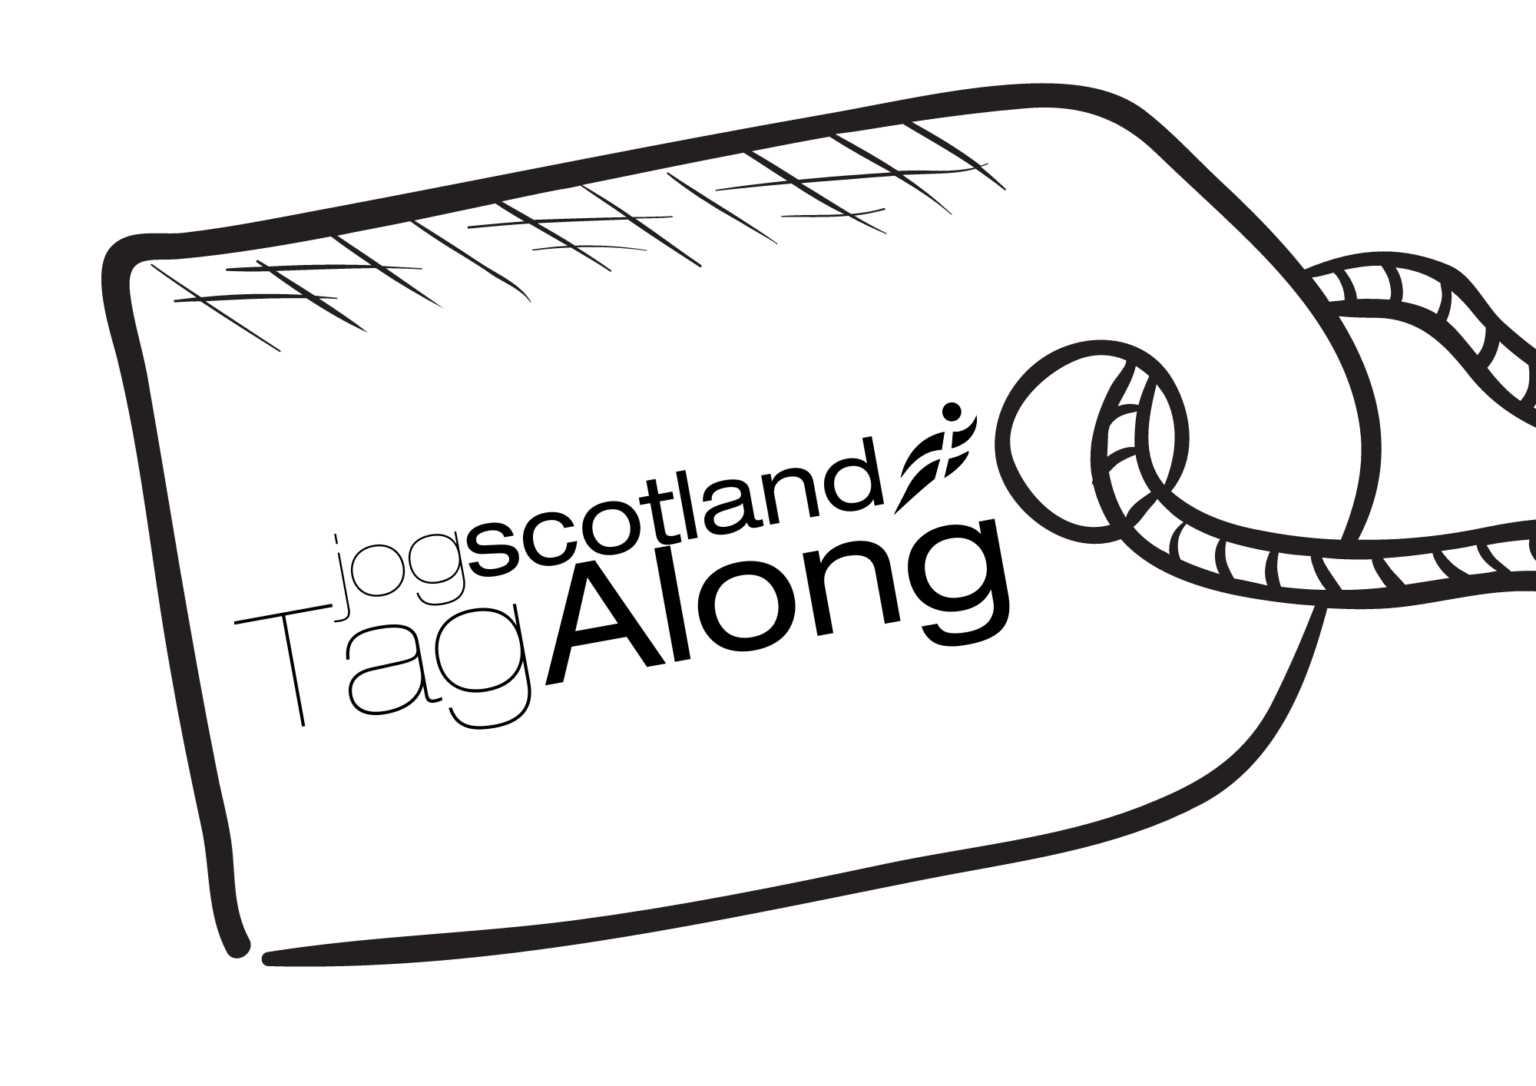 tag-along-campaign-get-involved-jog-scotland